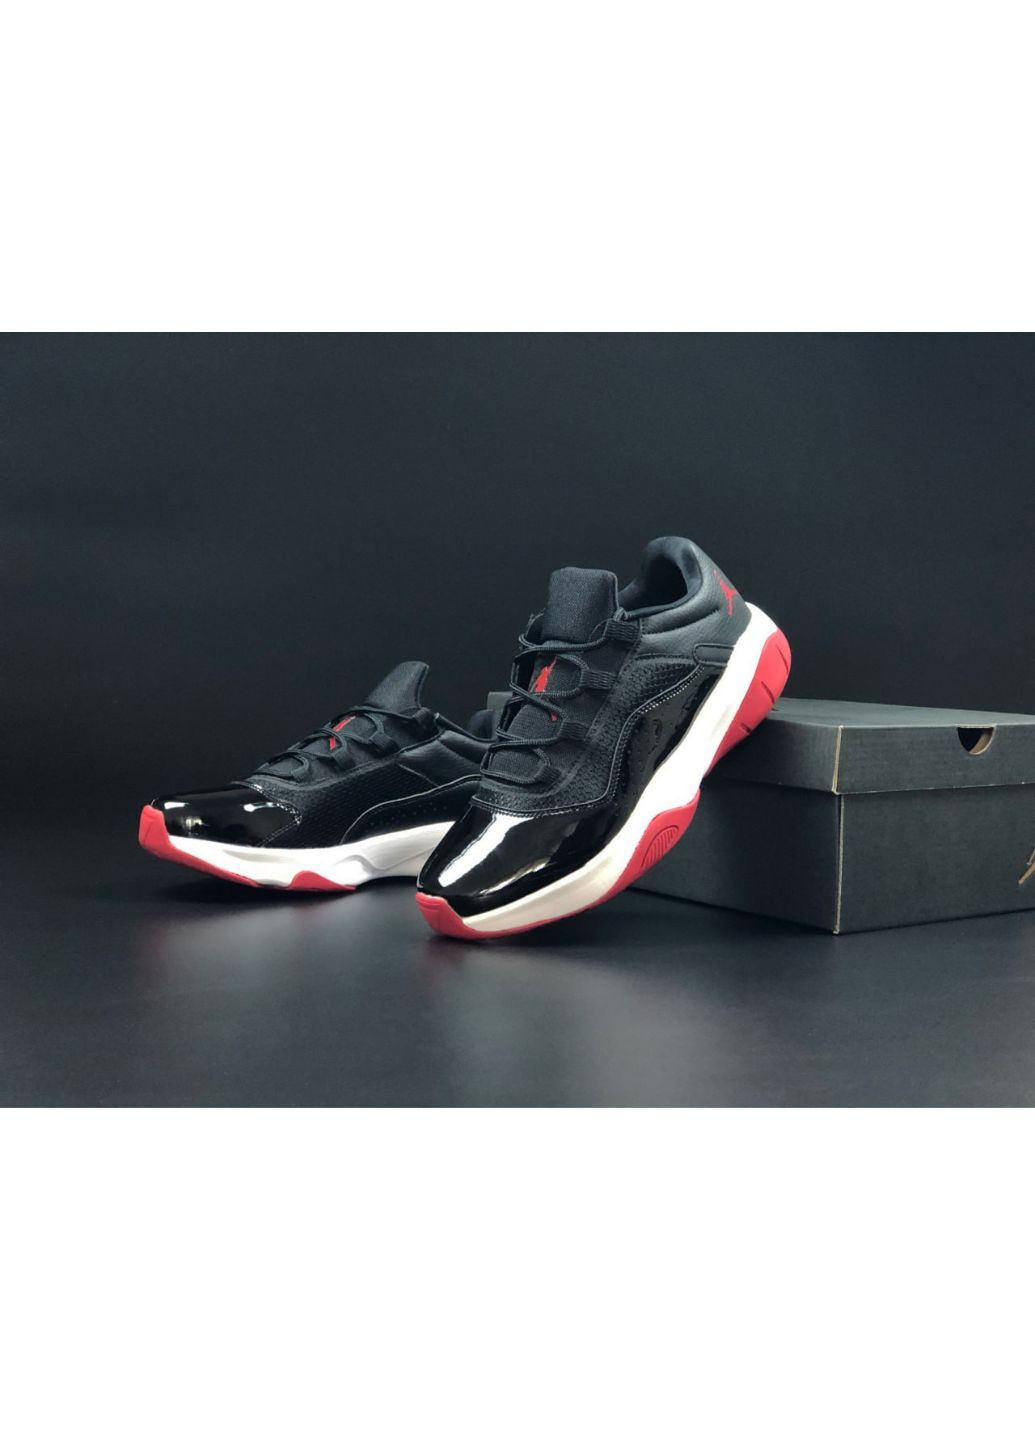 Черные демисезонные мужские кроссовки черные с белым\красным «no name» Nike Air Jordan 11 cmft